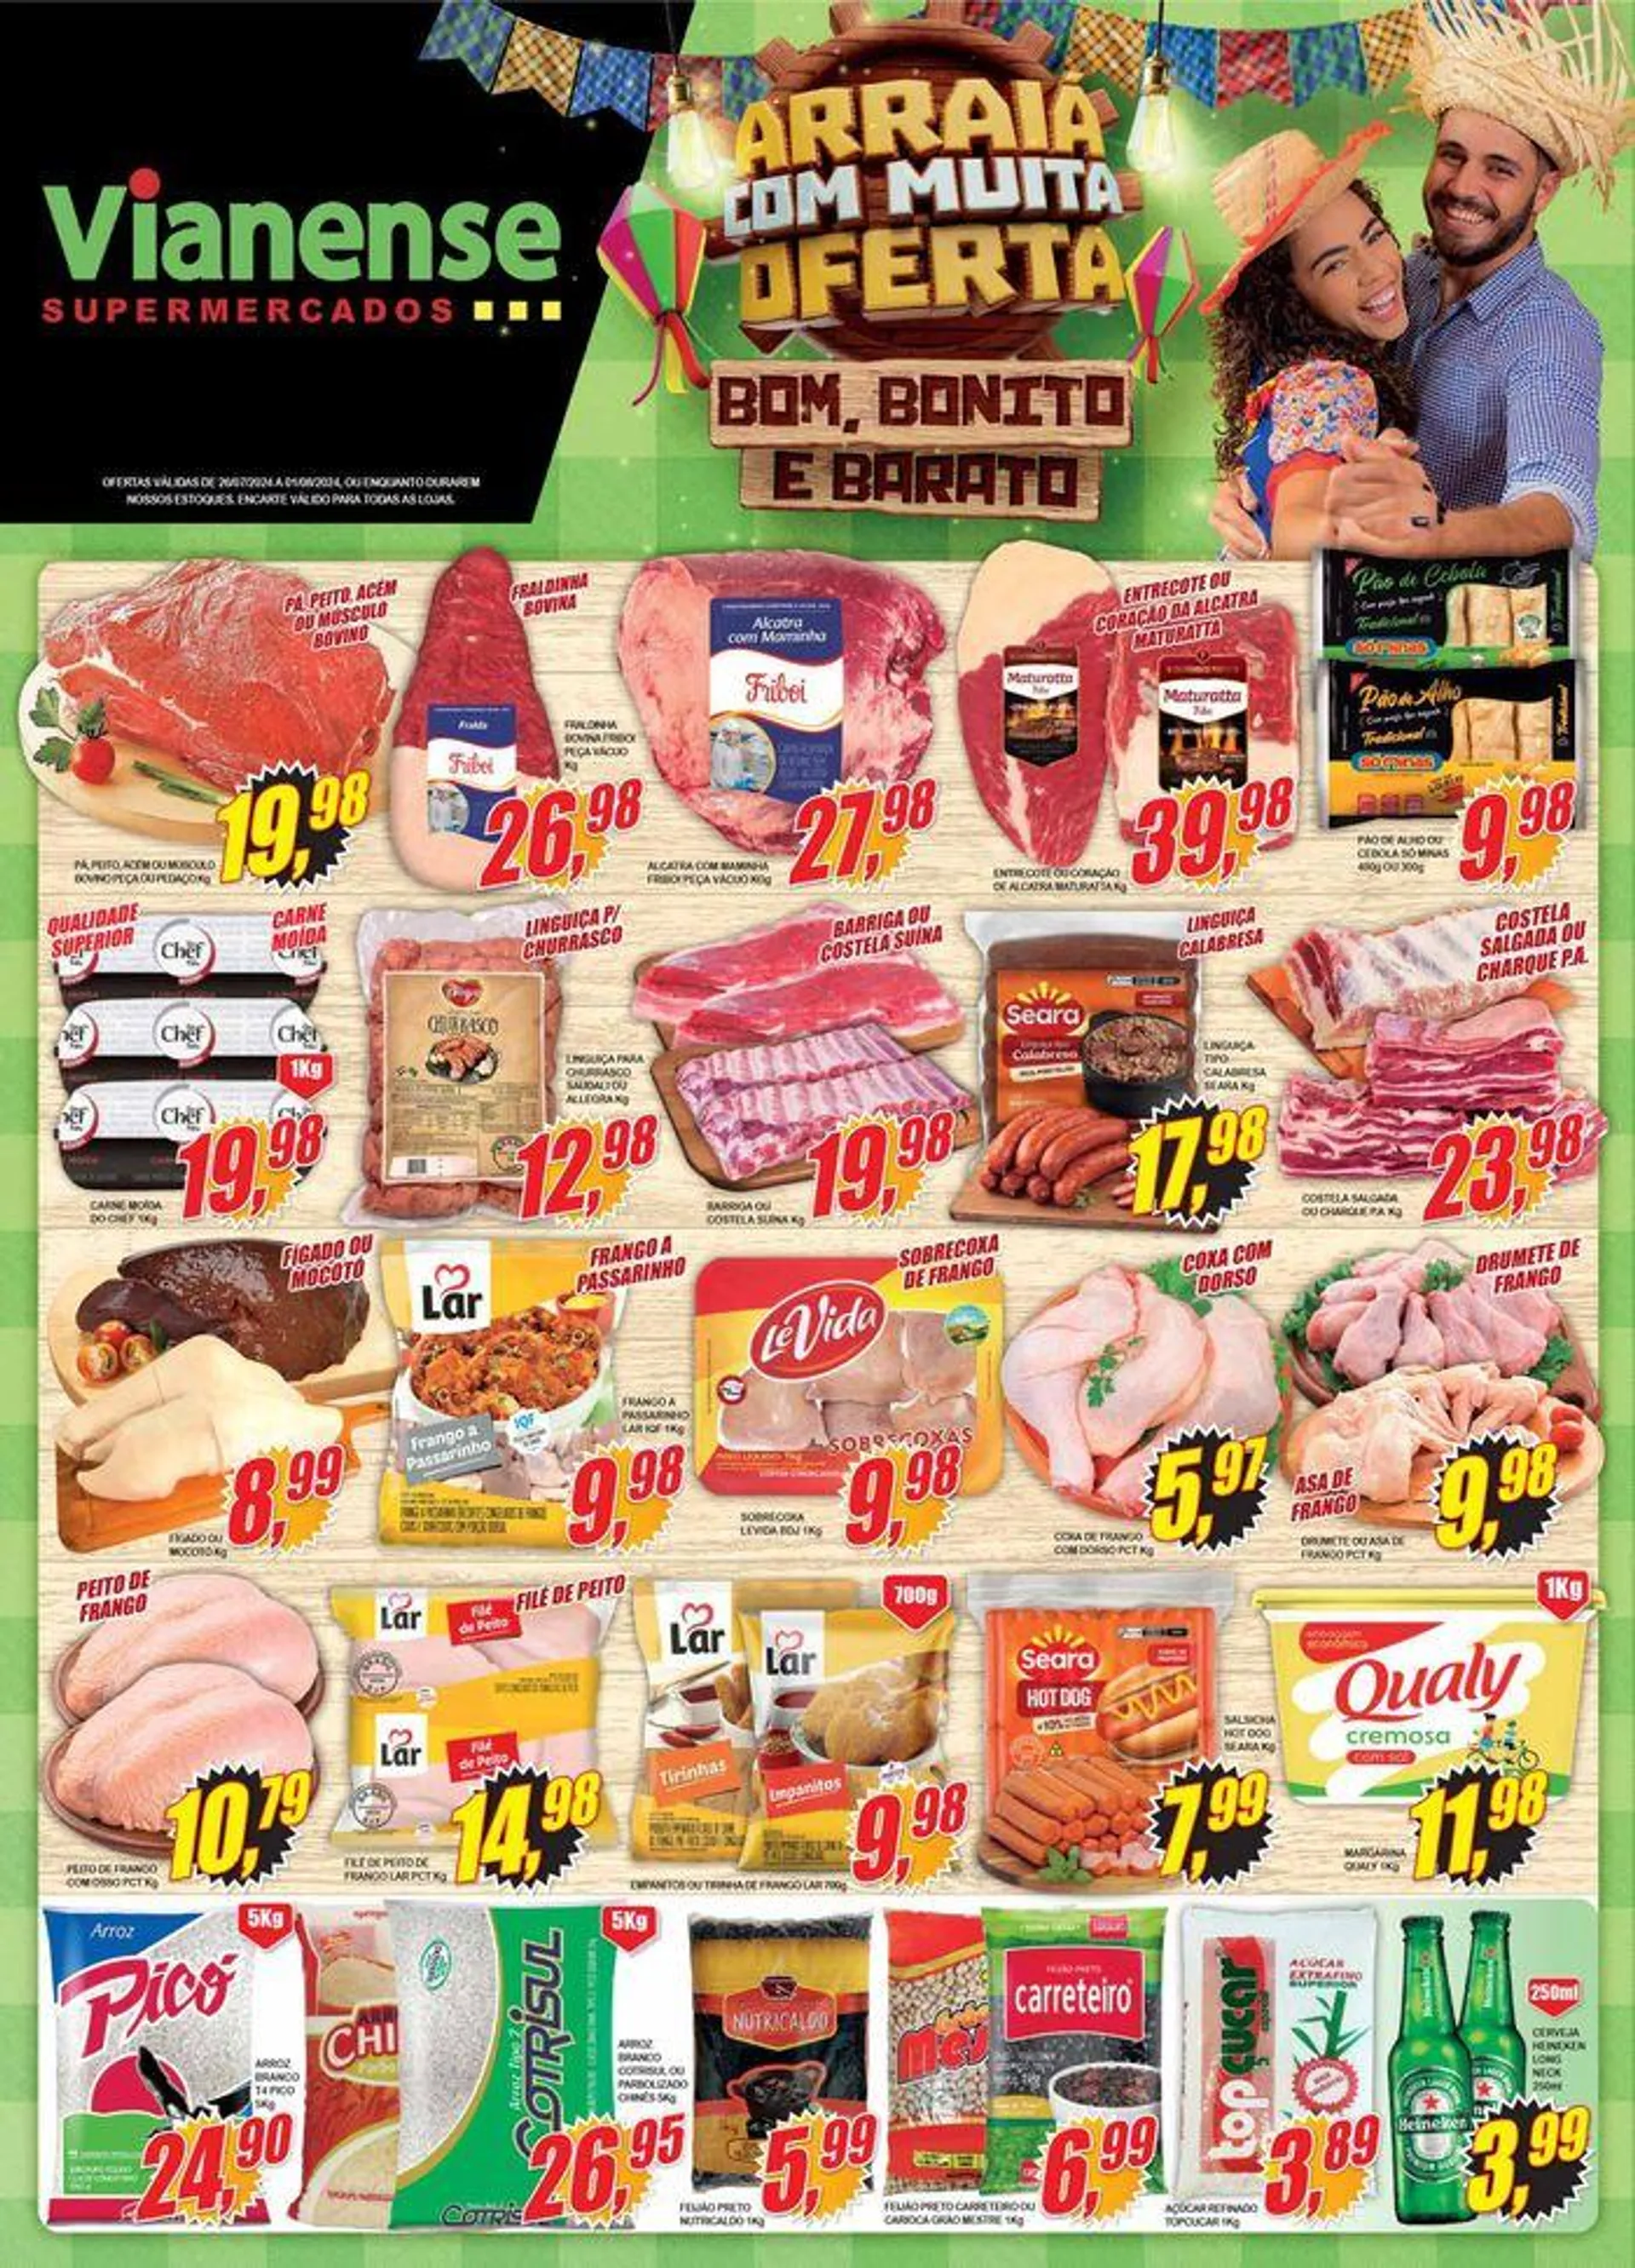 Ofertas Vianense Supermercados - 1